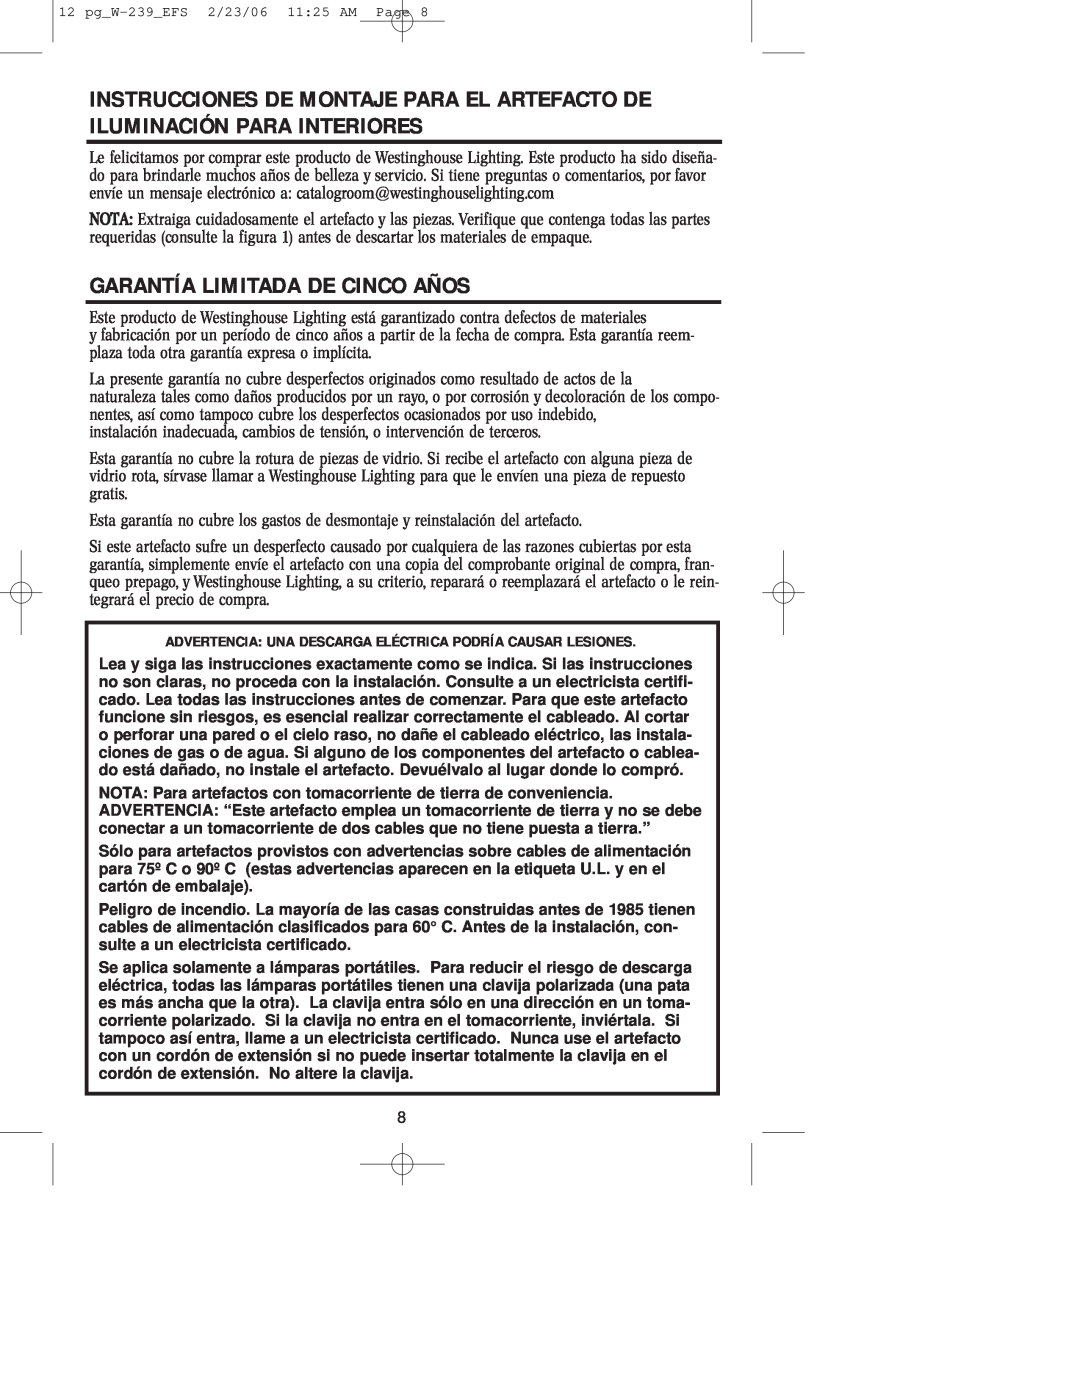 Westinghouse W-239 owner manual Garantía Limitada De Cinco Años 